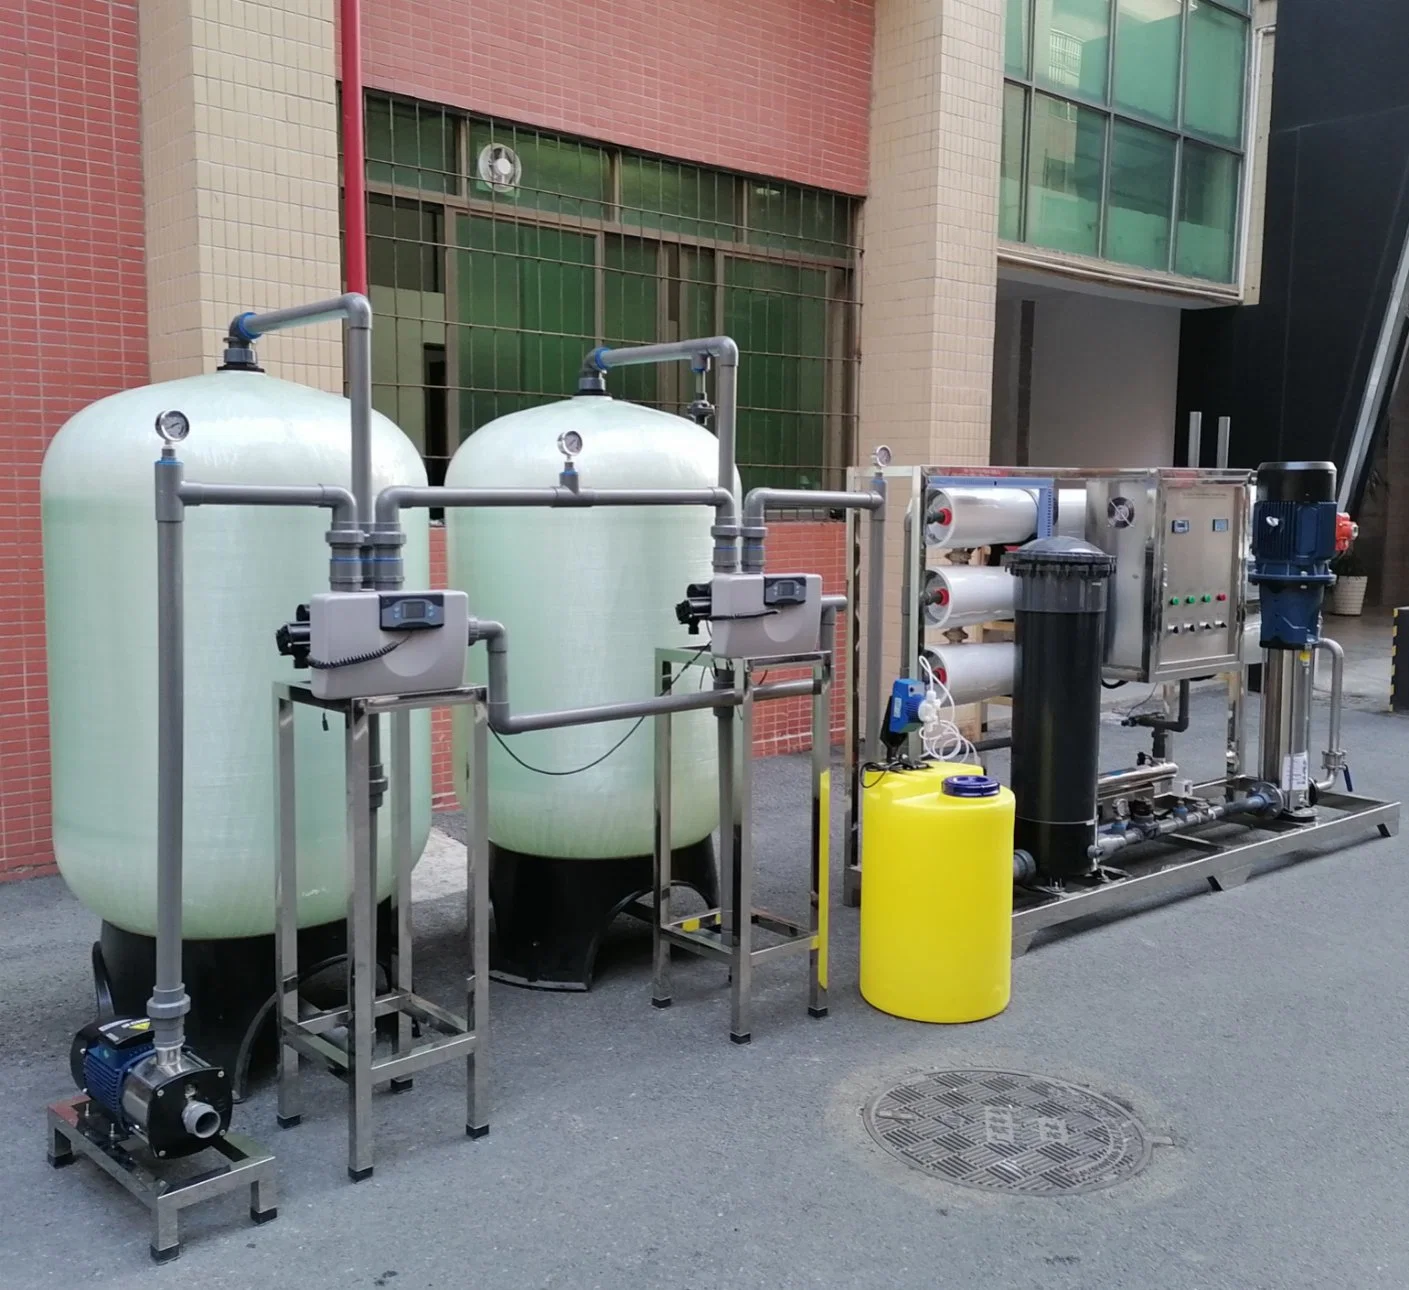 6000 lph Desalación de Agua de Pozo Salado Industrial sistema de Osmosis Inversa tratamiento purificador de agua potable Filtro de la planta de purificación de la máquina RO